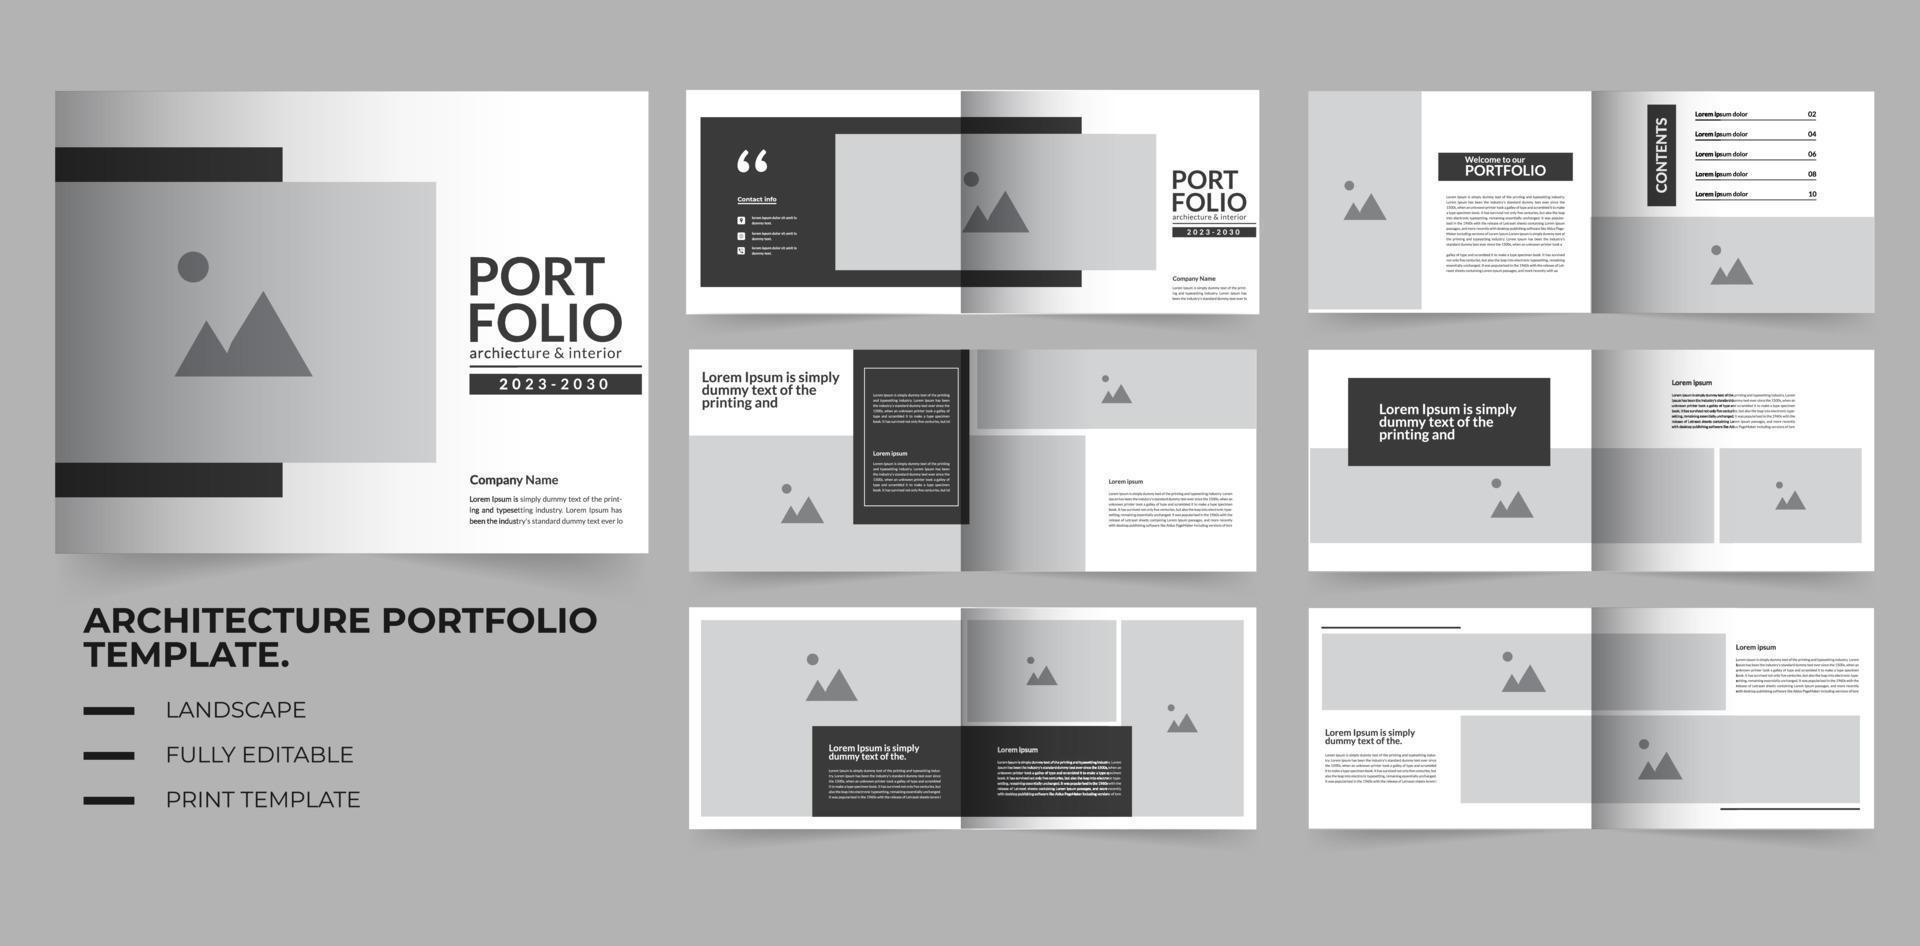 Portfolio design architecture and interior portfolio template vector